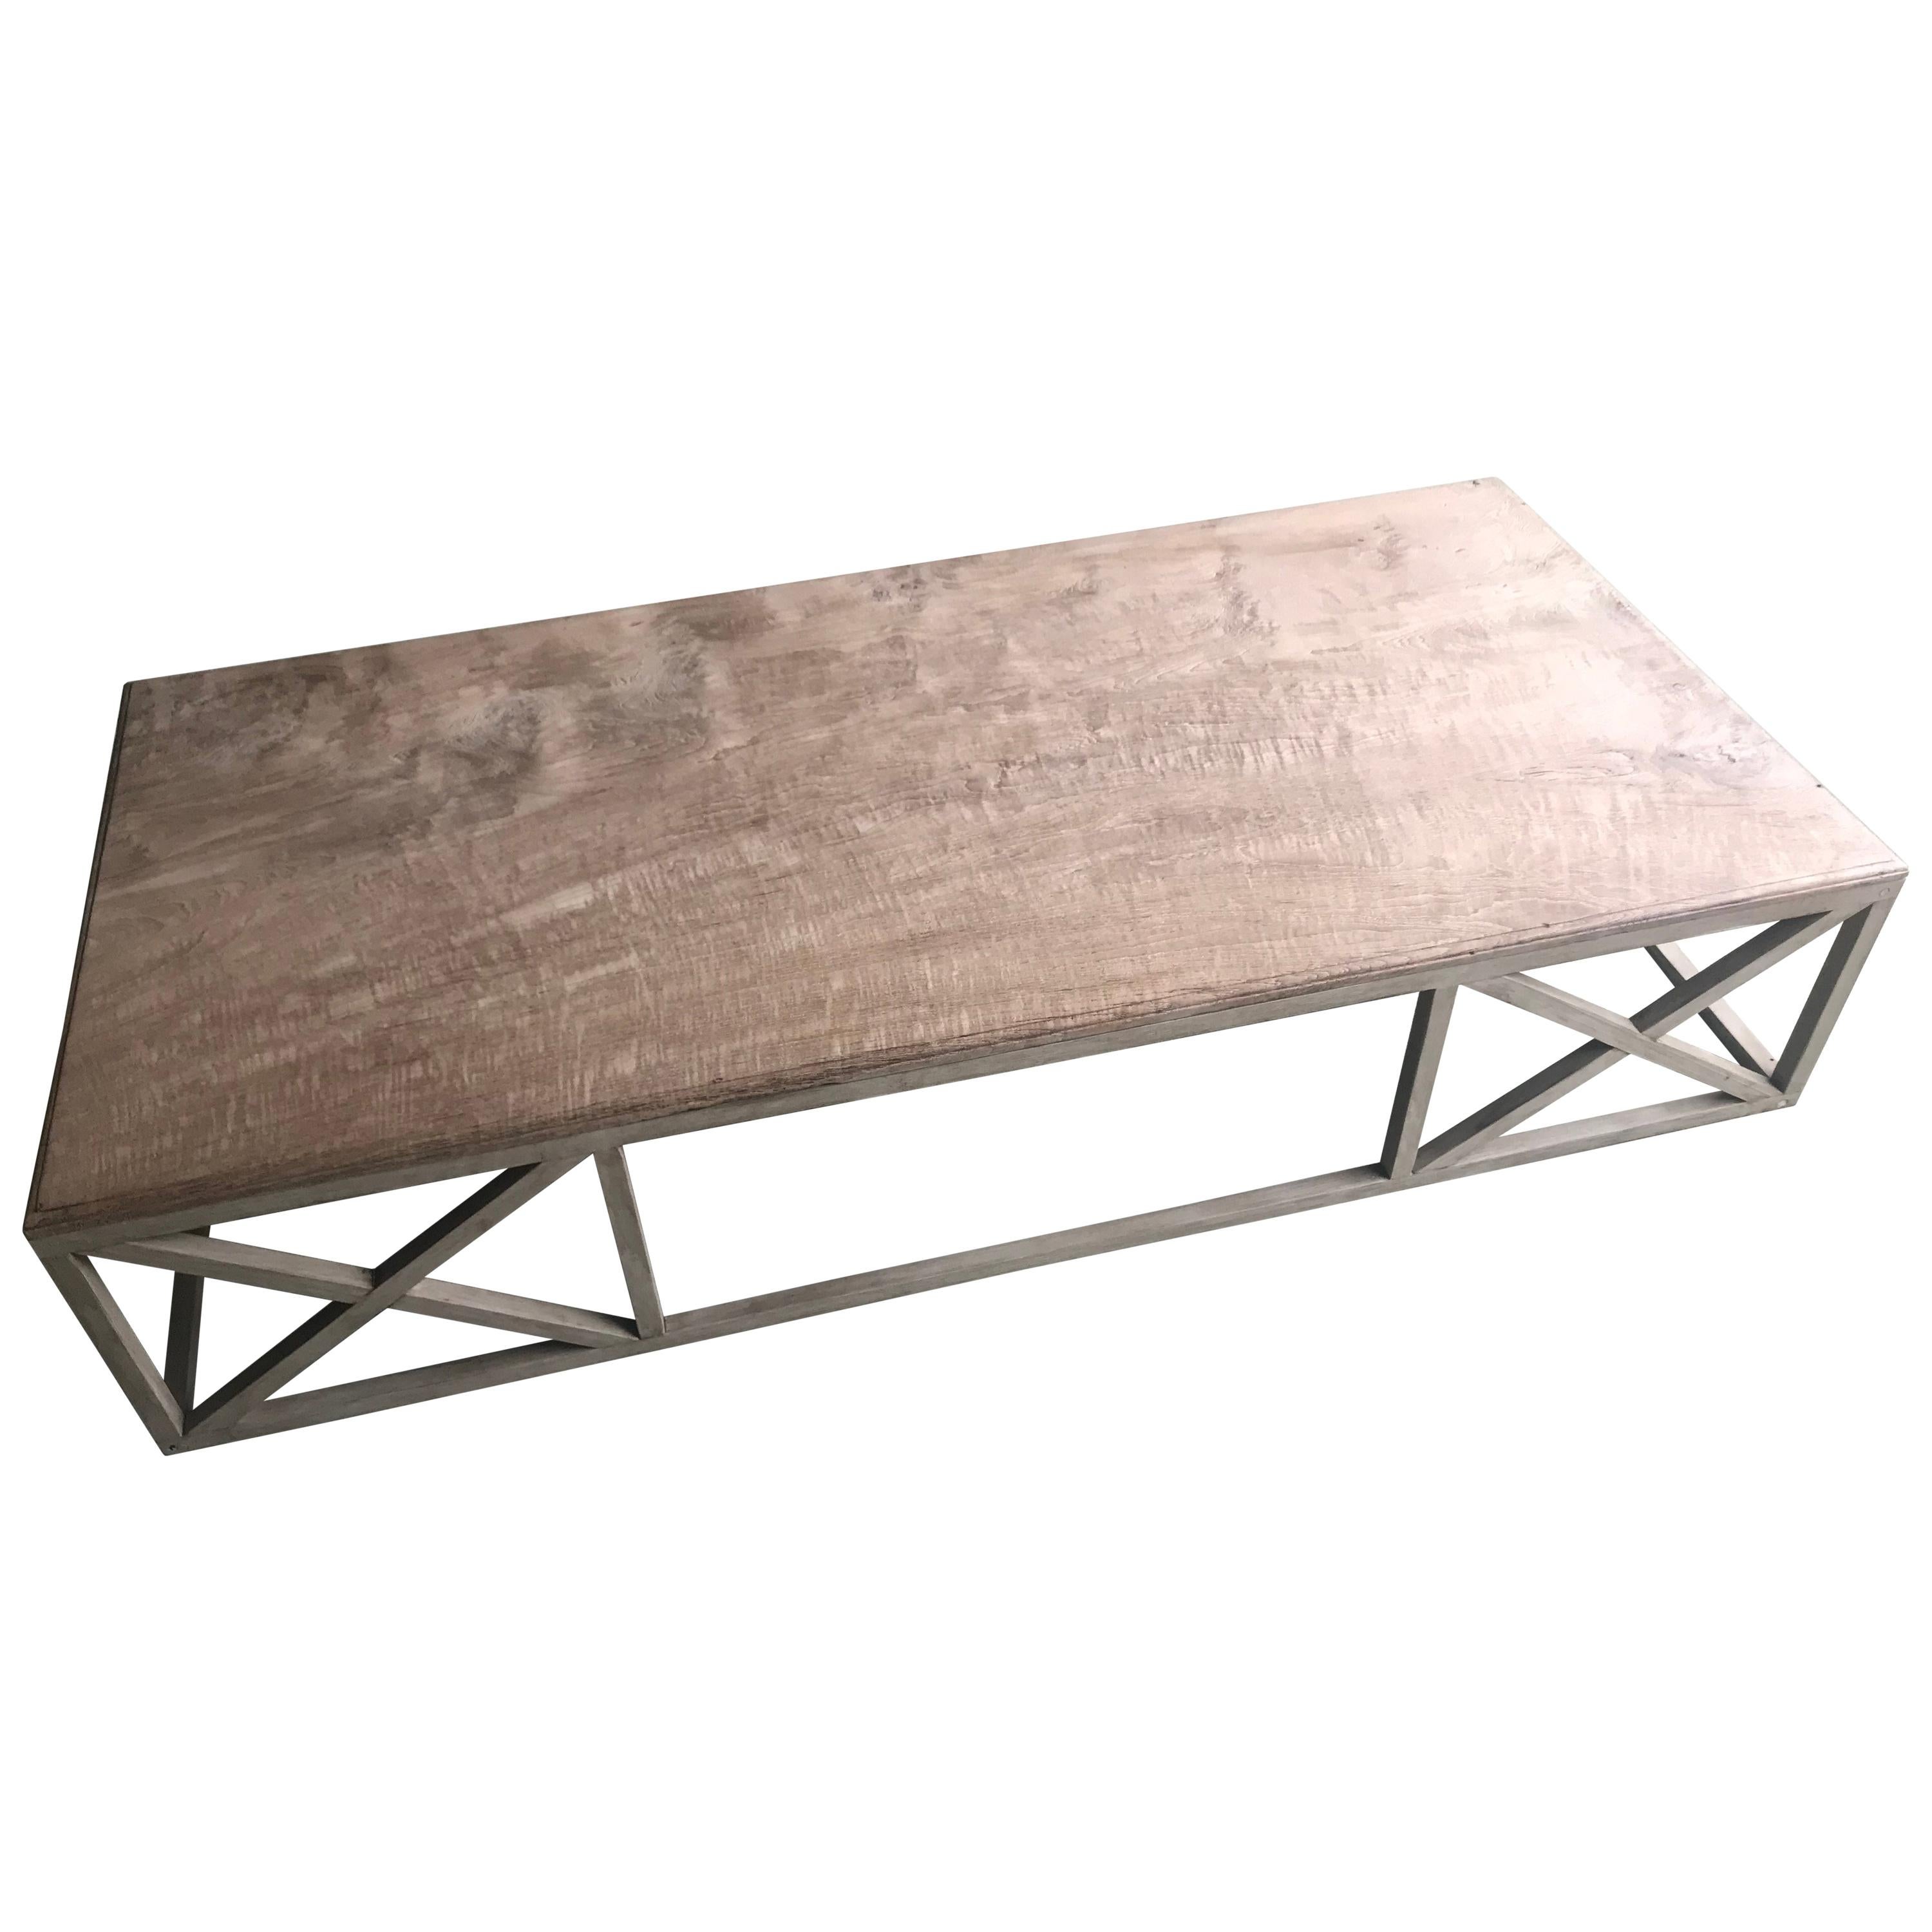 Table basse en bois sur une base en bois